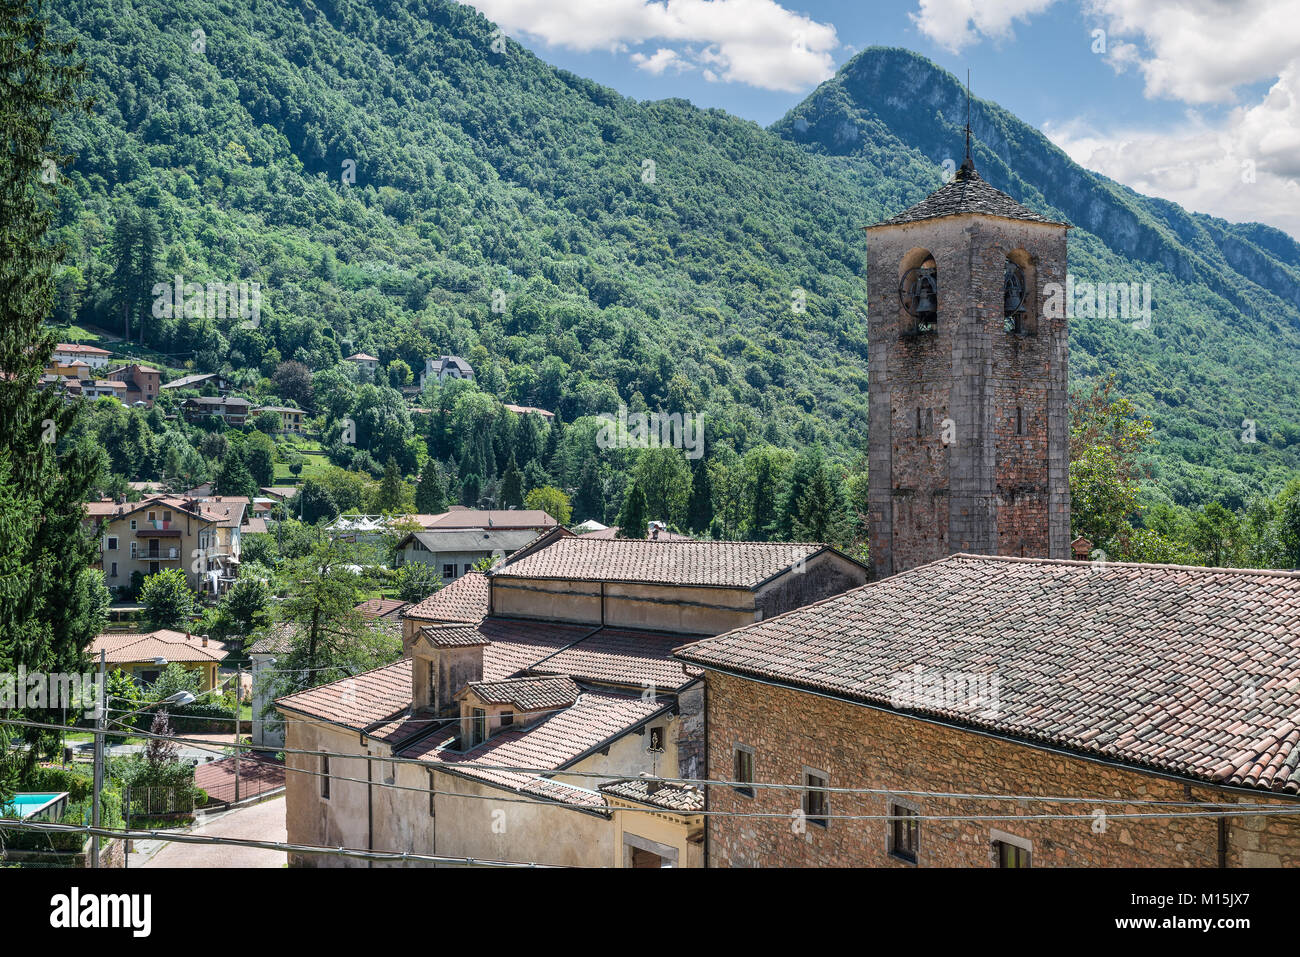 Einen Einblick in das malerische Dorf Ganna in Valganna mit der römischen Stil Glockenturm der Abtei San Gemolo (saint Gemolus) (12. Jahrhundert) Stockfoto